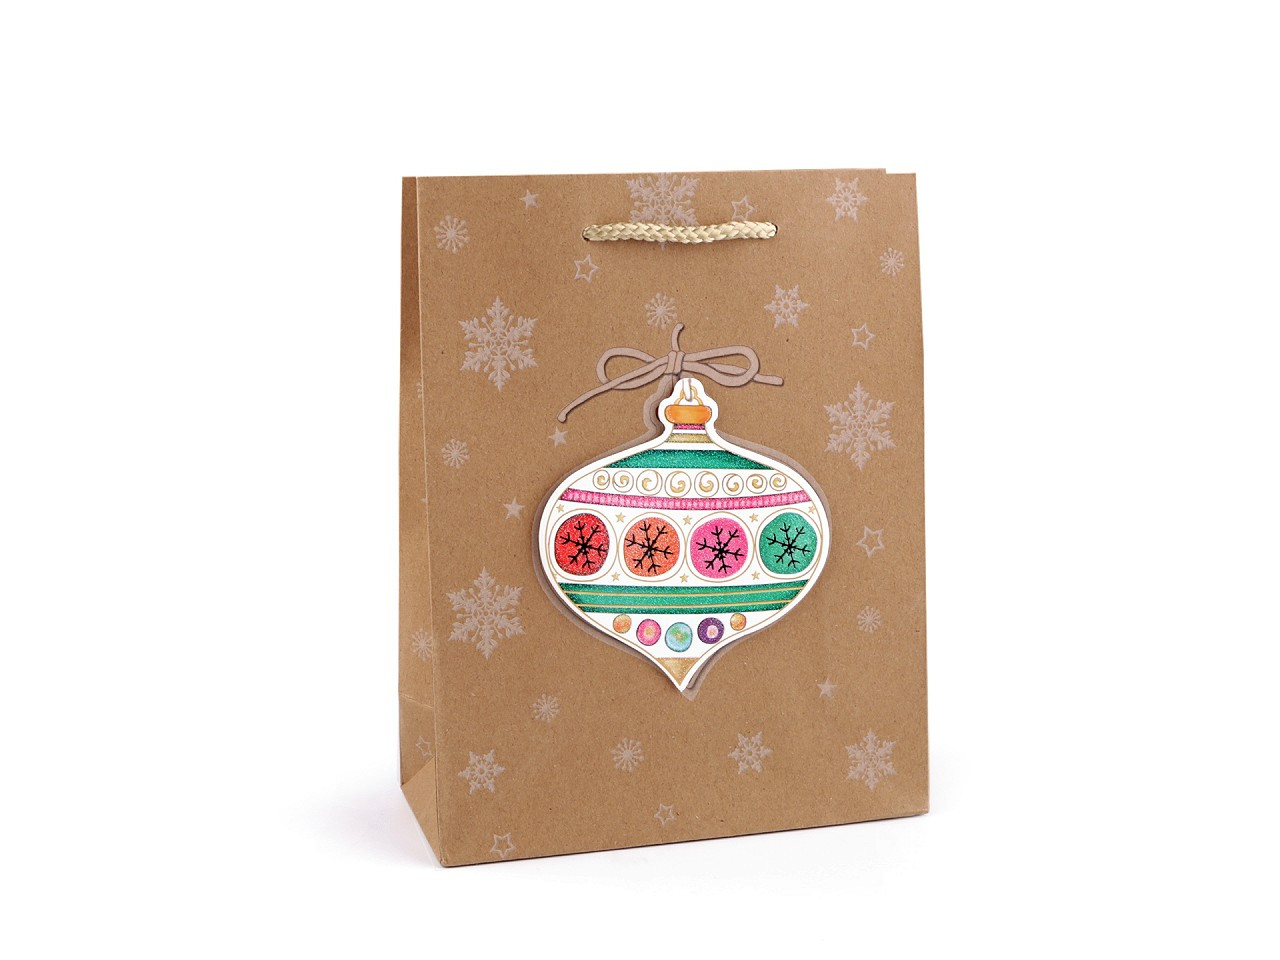 Dárková taška vánoční přírodní, barva 2 hnědá přírodní baňka